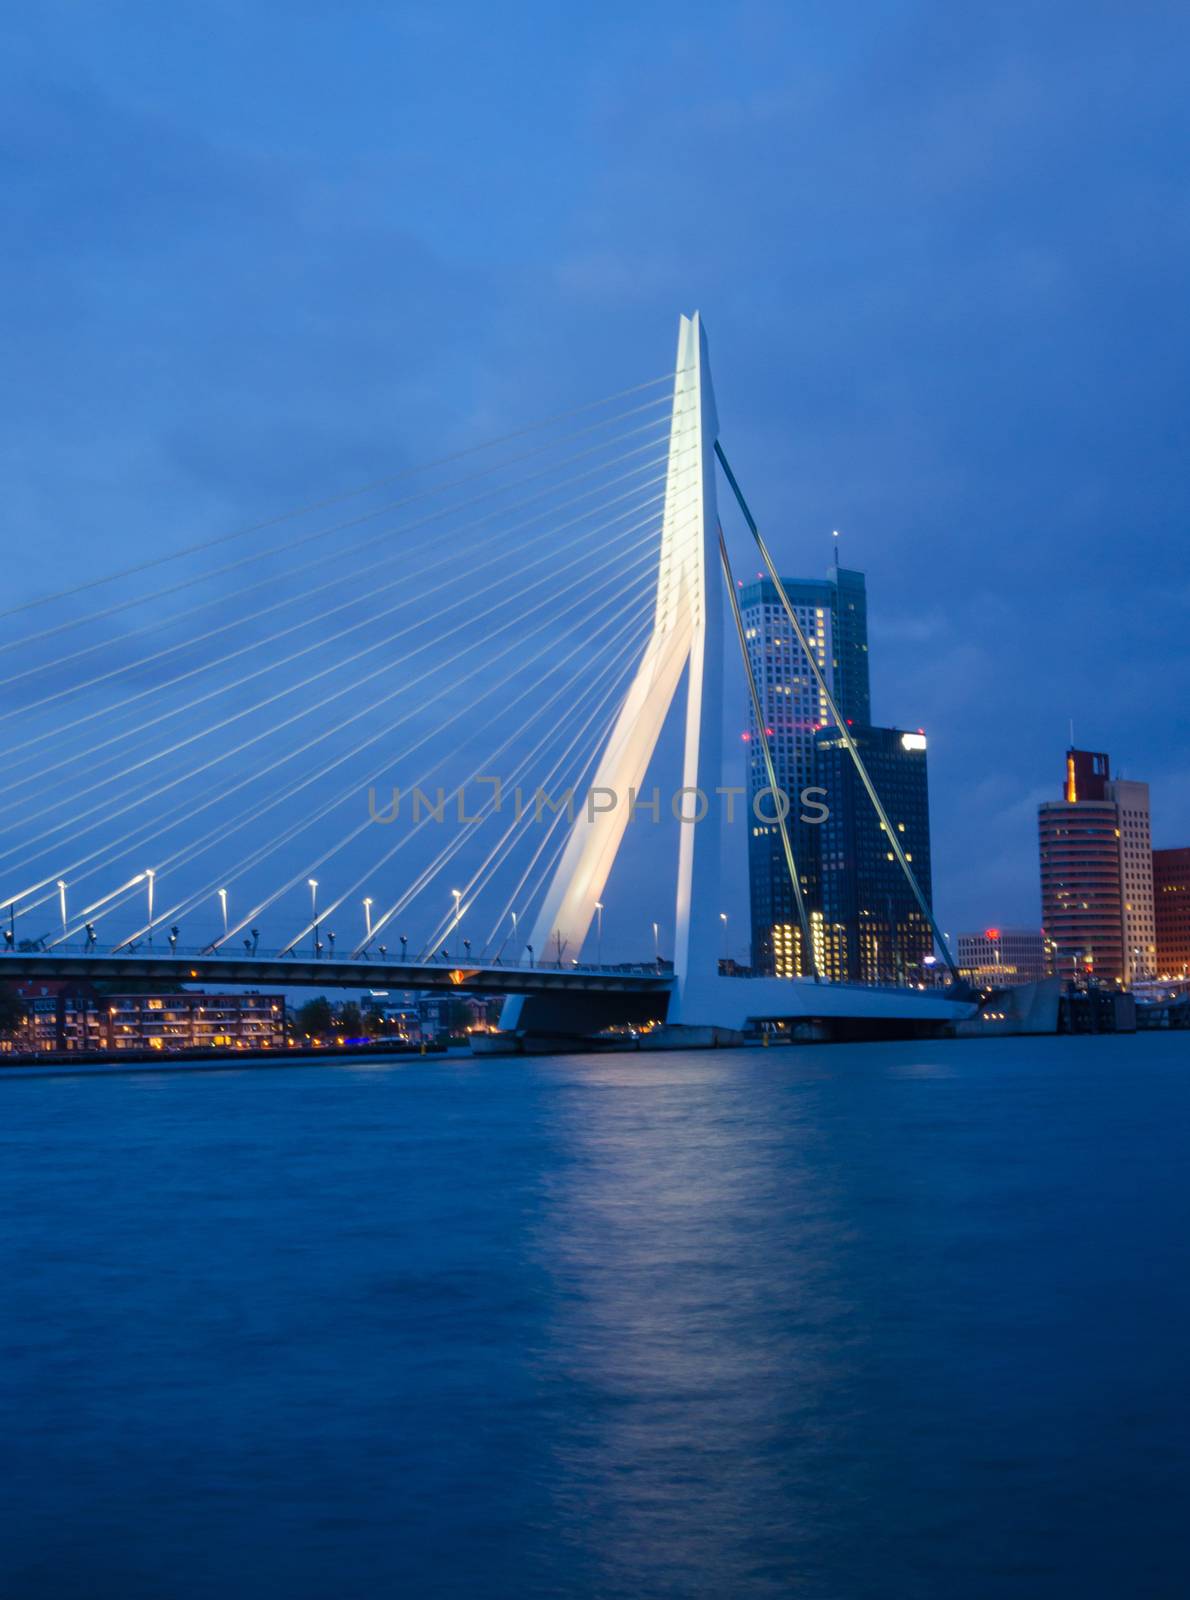 Twilight at Erasmus Bridge in Rotterdam, Netherlands